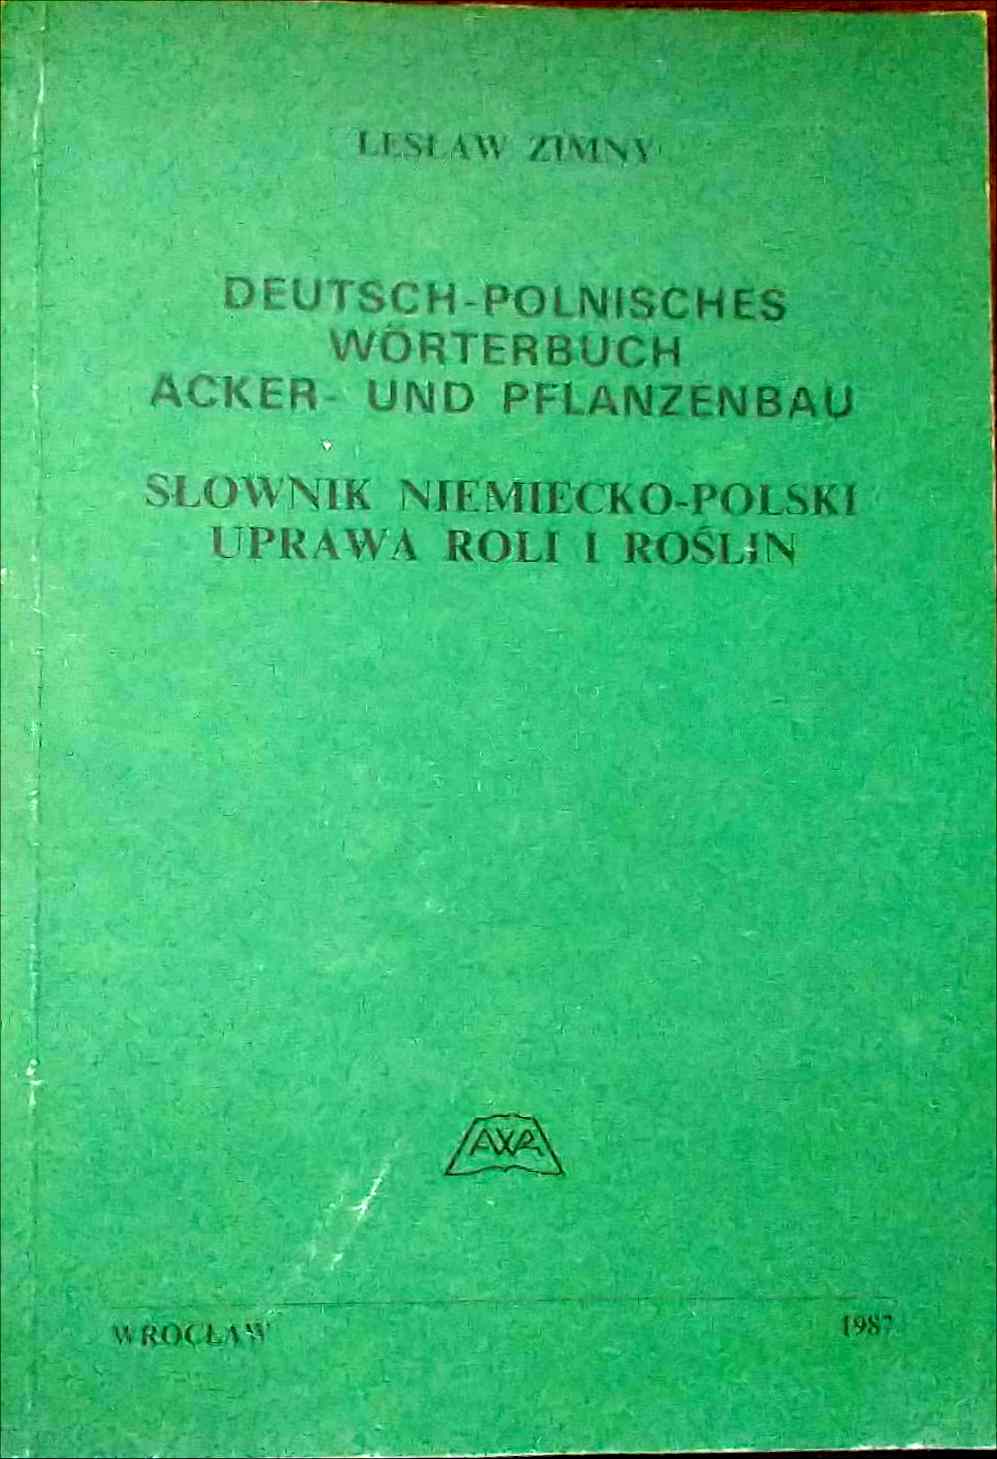 Deutsch-polnisches Wrterbuch. Acker- und Pflanzenbau - 376 Seiten